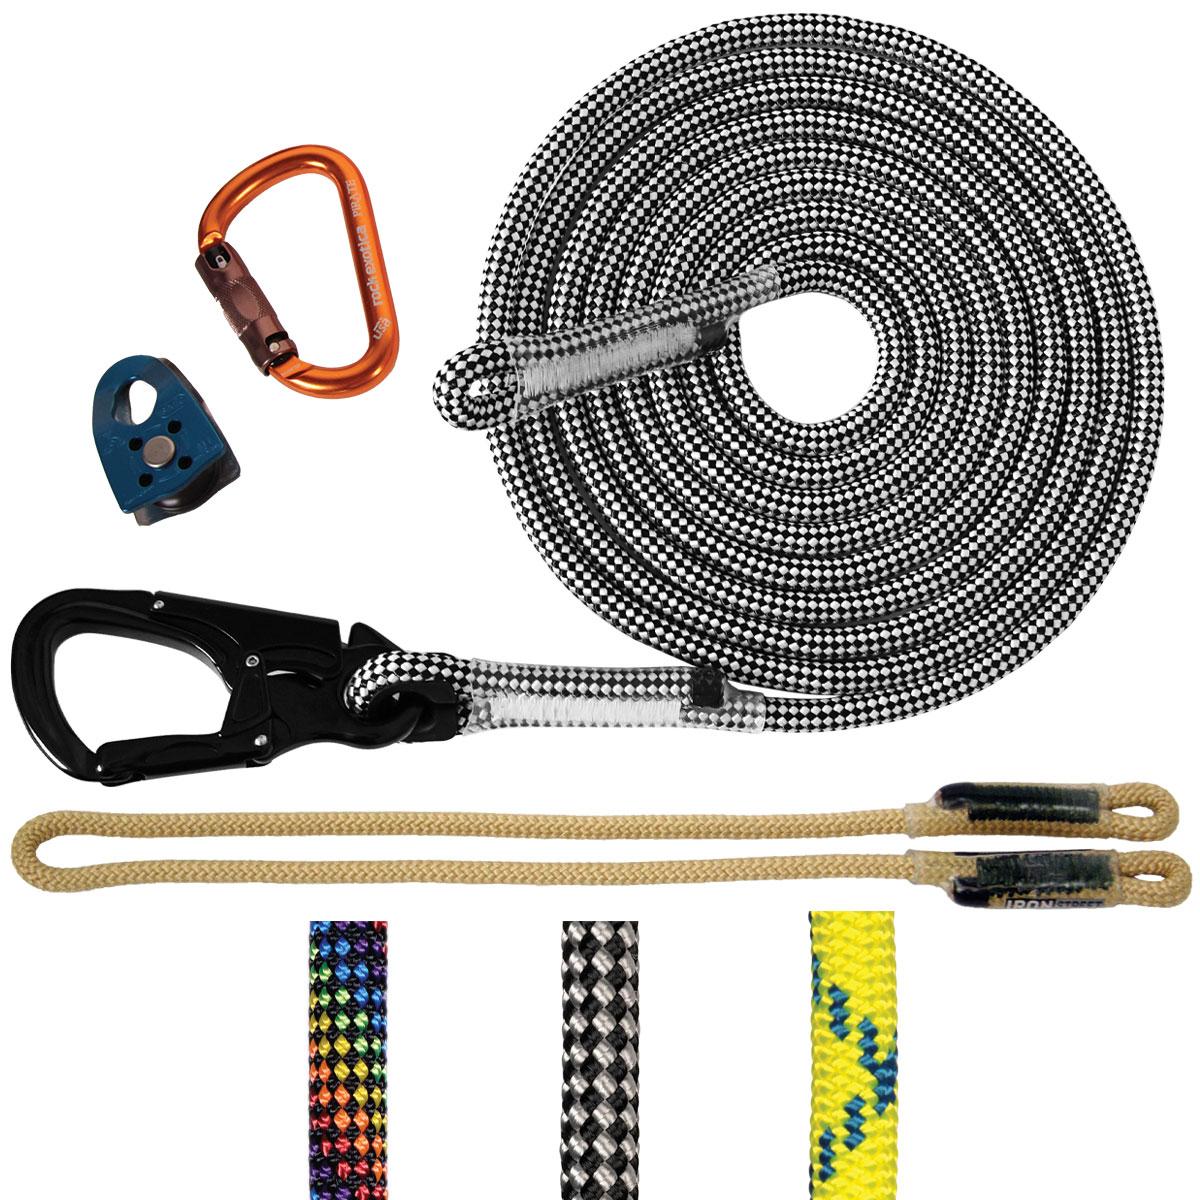 Kernmantle Rope Lanyard Kits